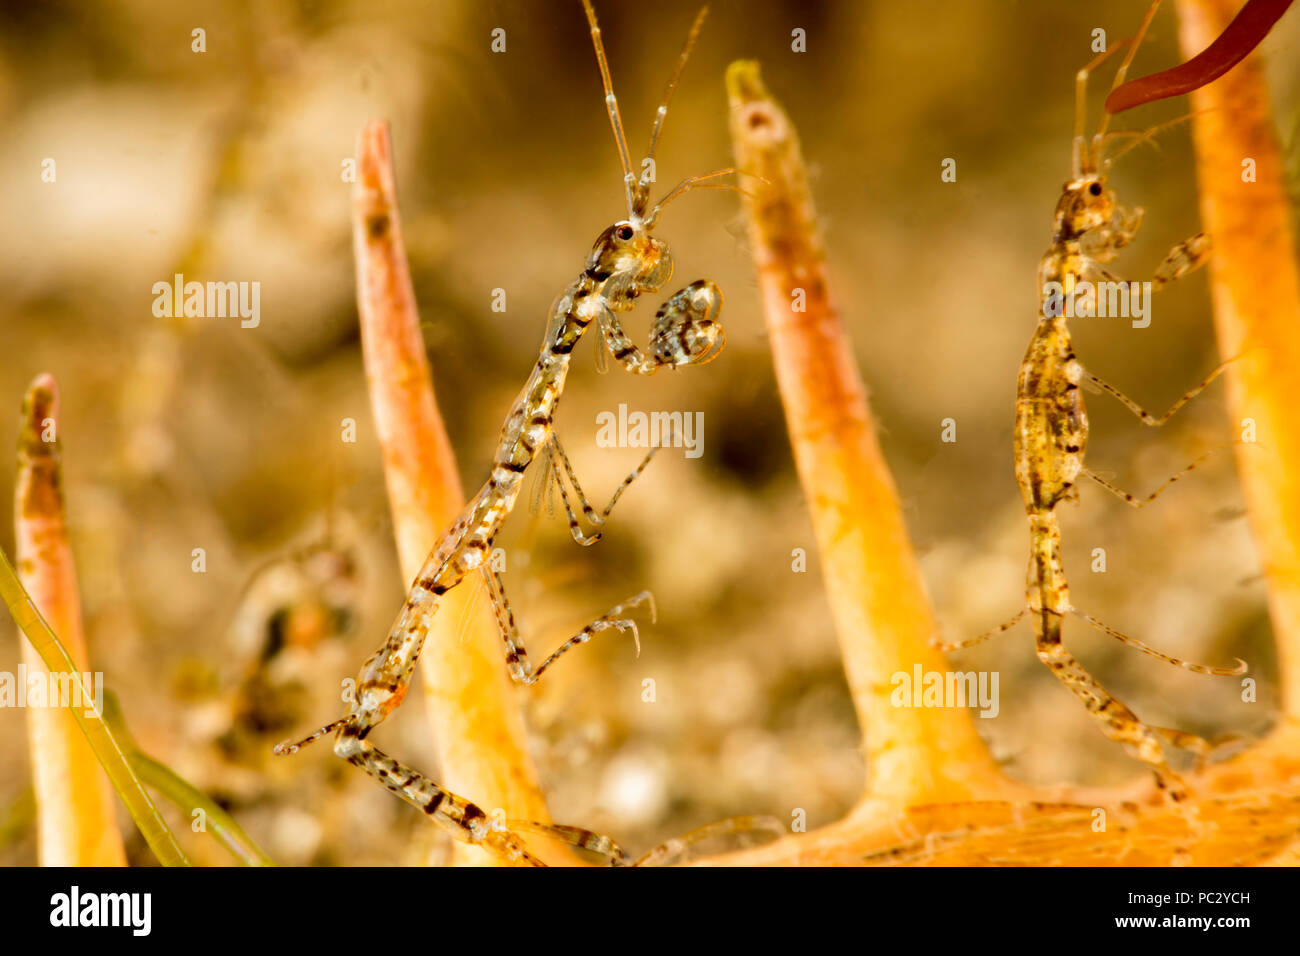 Skeleton shrimp, Caprellide sp. Dumaguete, Philippines, Asia. Stock Photo